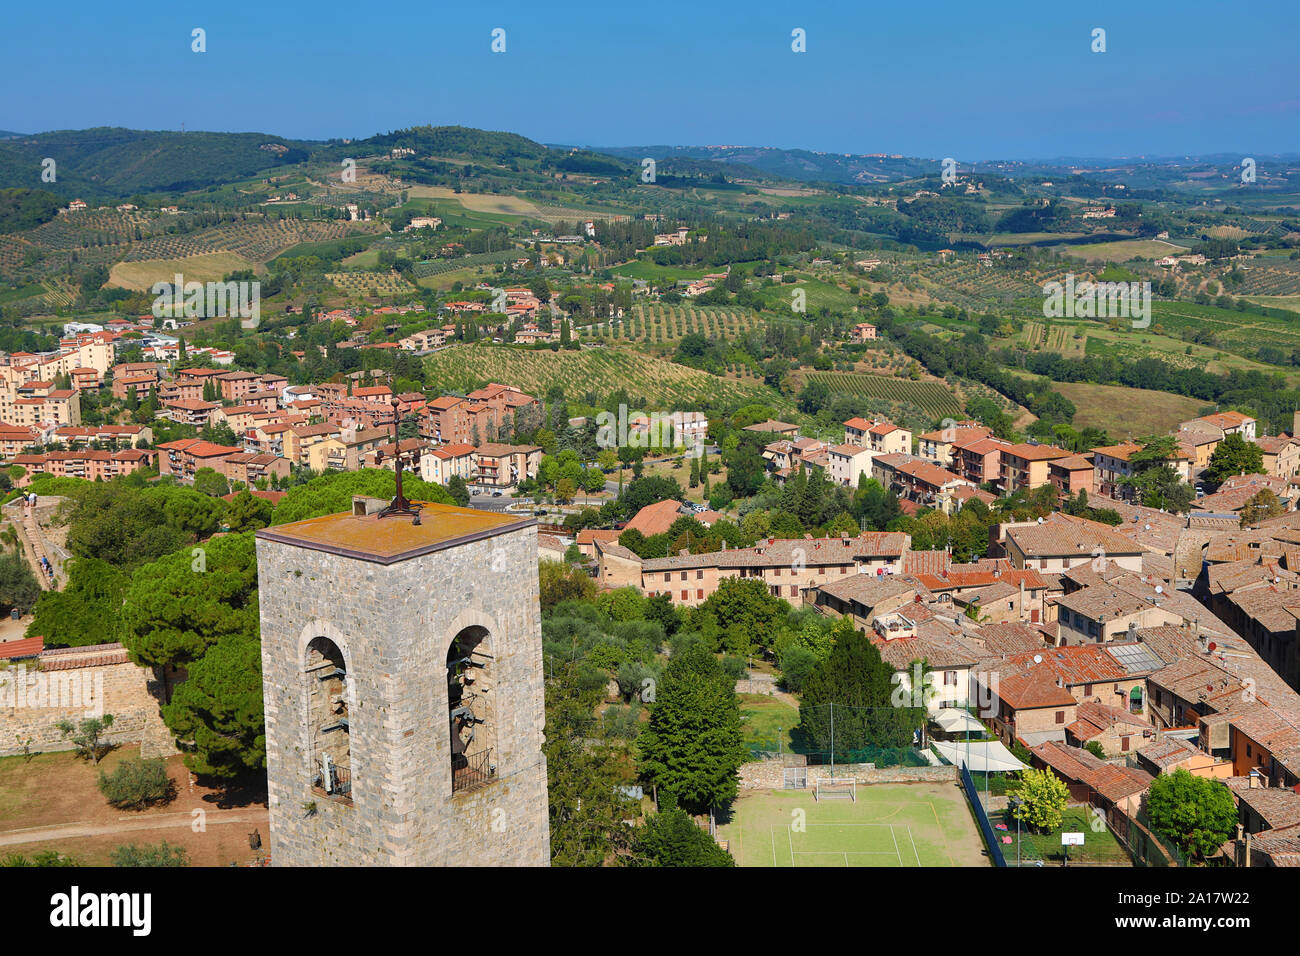 Vista desde la Torre Grossa sobre los tejados de San Gimignano y la campiña toscana, Toscana, Italia Foto de stock